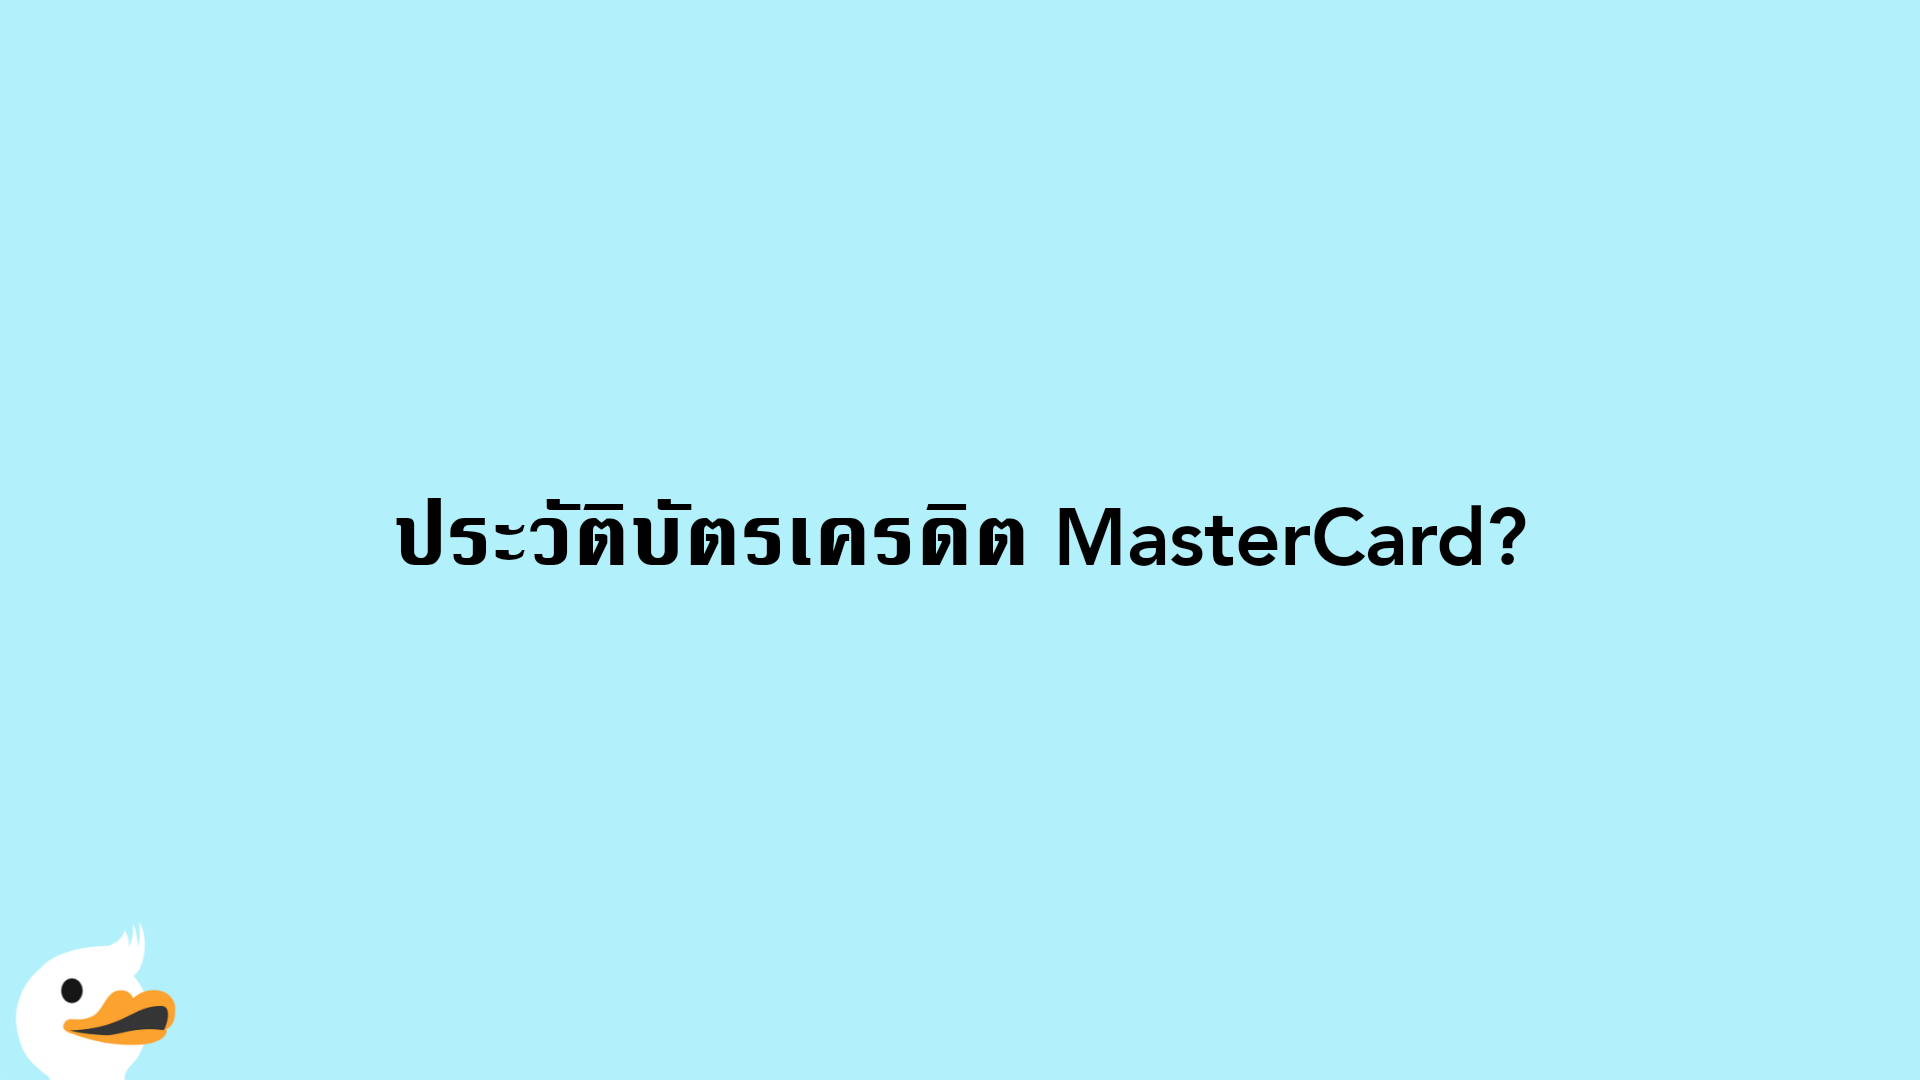 ประวัติบัตรเครดิต MasterCard?